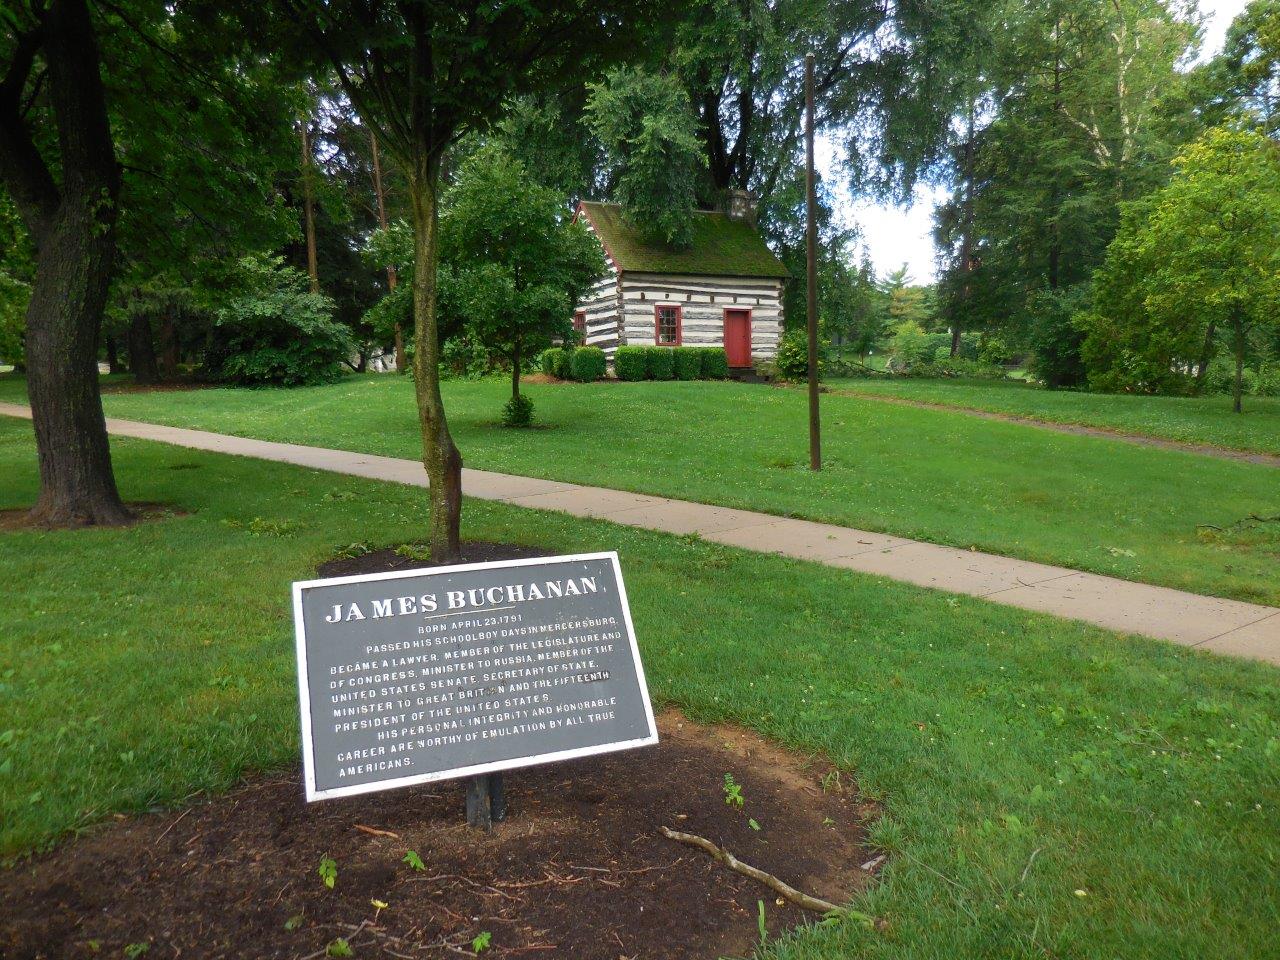 James Buchanan cabin in Mercersburg, Pennsylvania